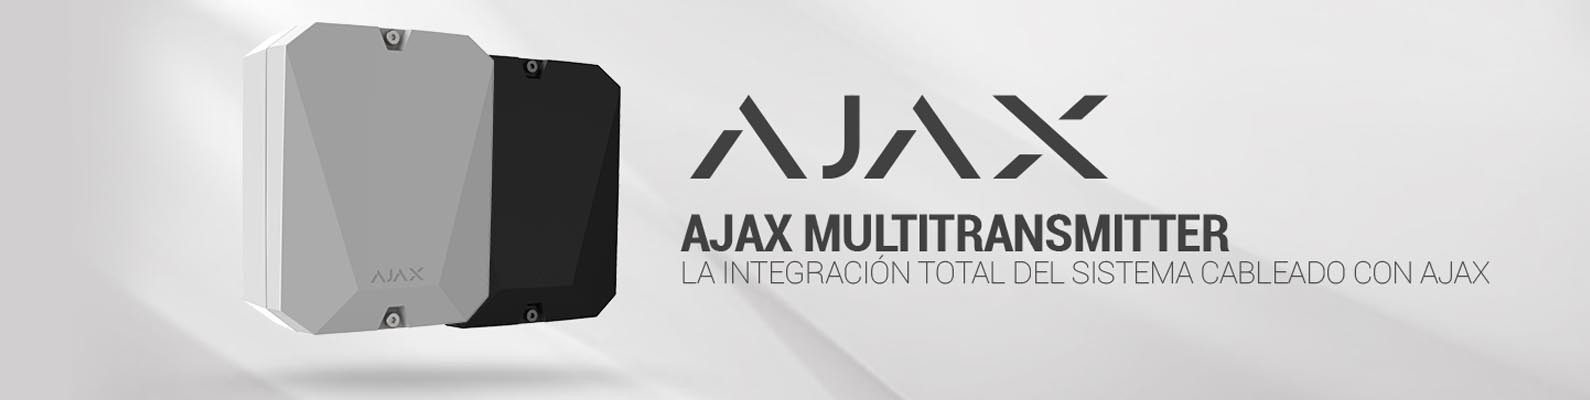 Multitransmitter ajax